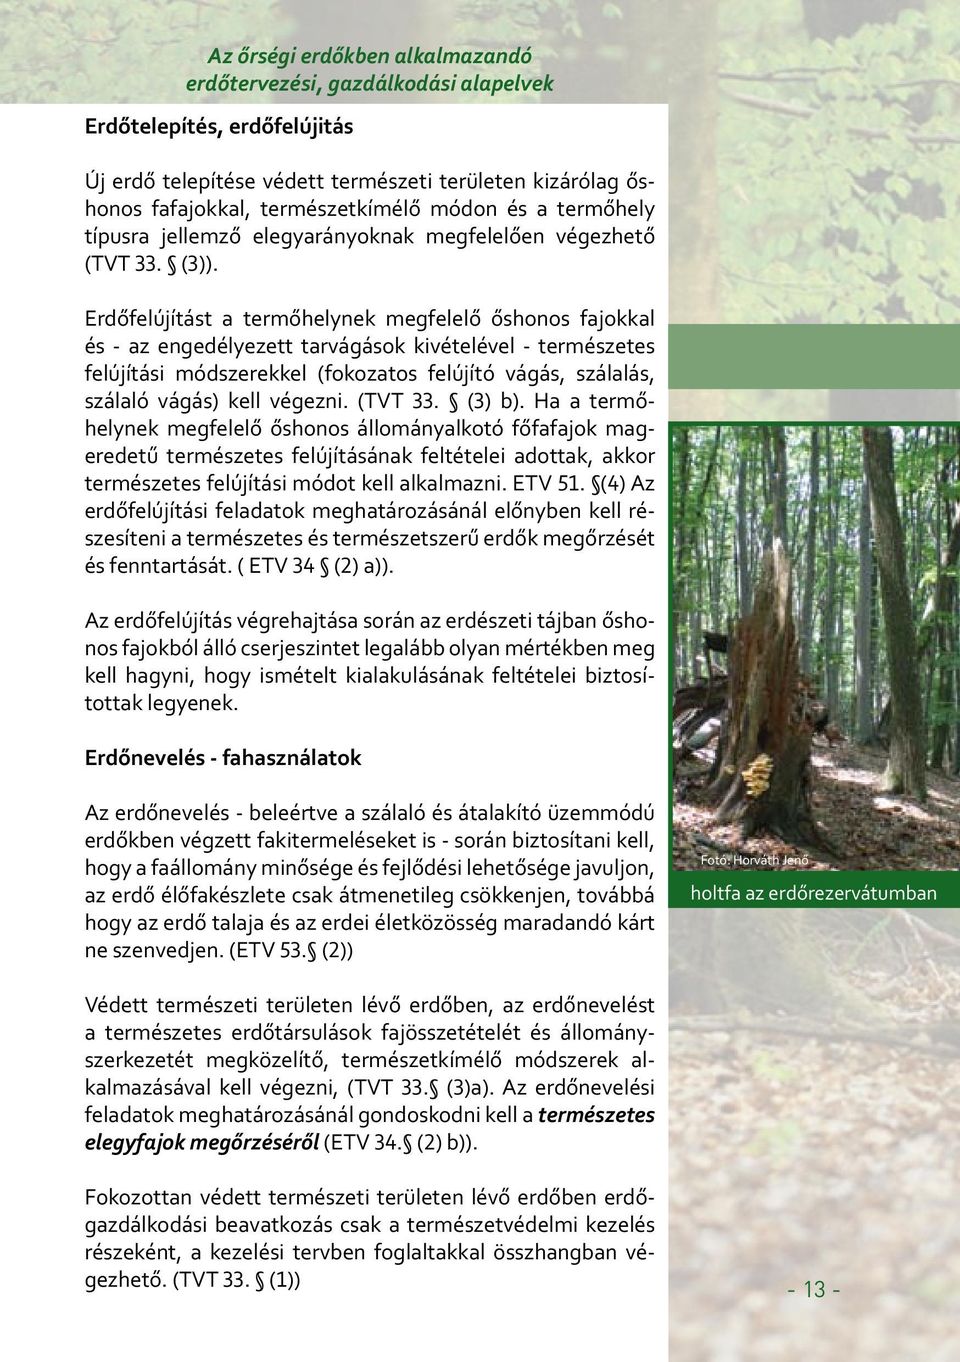 Erdőfelújítást a termőhelynek megfelelő őshonos fajokkal és - az engedélyezett tarvágások kivételével - természetes felújítási módszerekkel (fokozatos felújító vágás, szálalás, szálaló vágás) kell